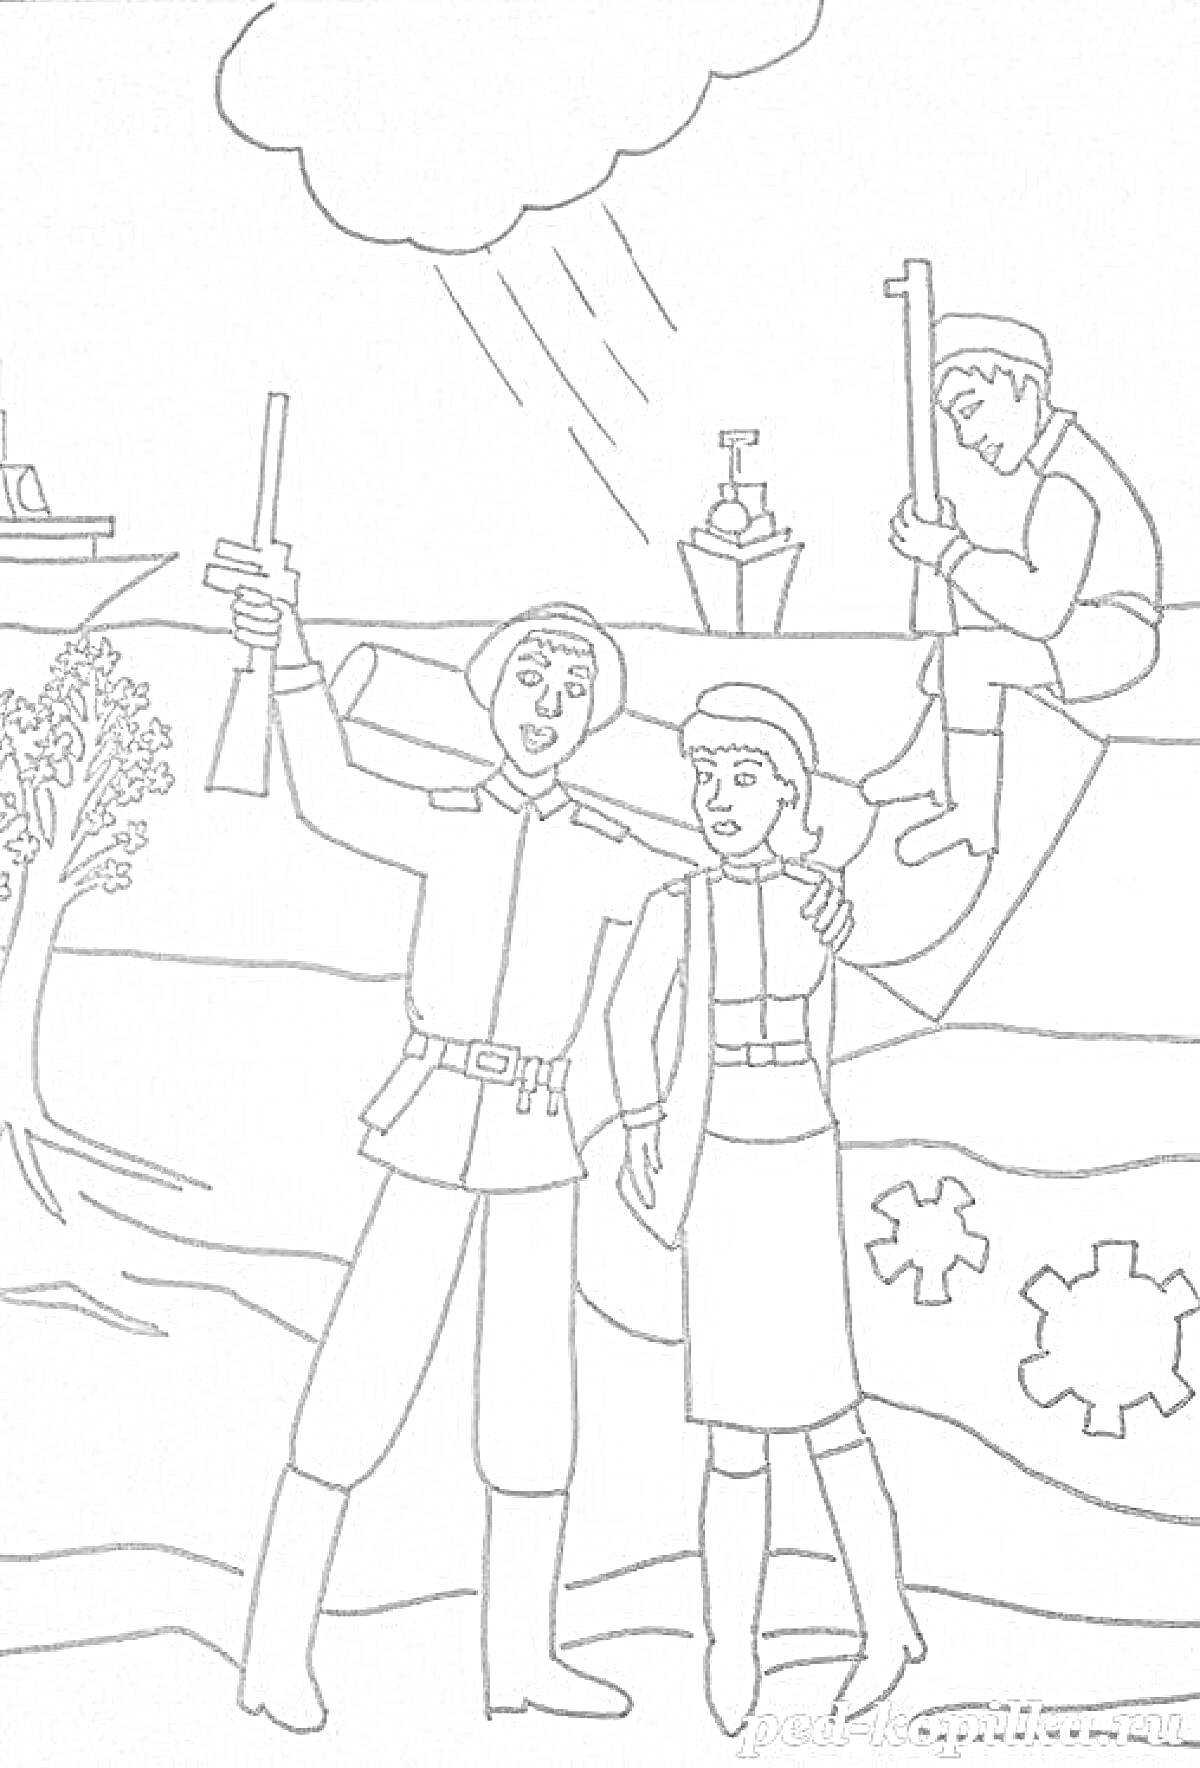 Освобождение Воронежа - радующиеся солдат и женщина, военная техника на заднем фоне, ветвистое дерево справа, корабли на реке